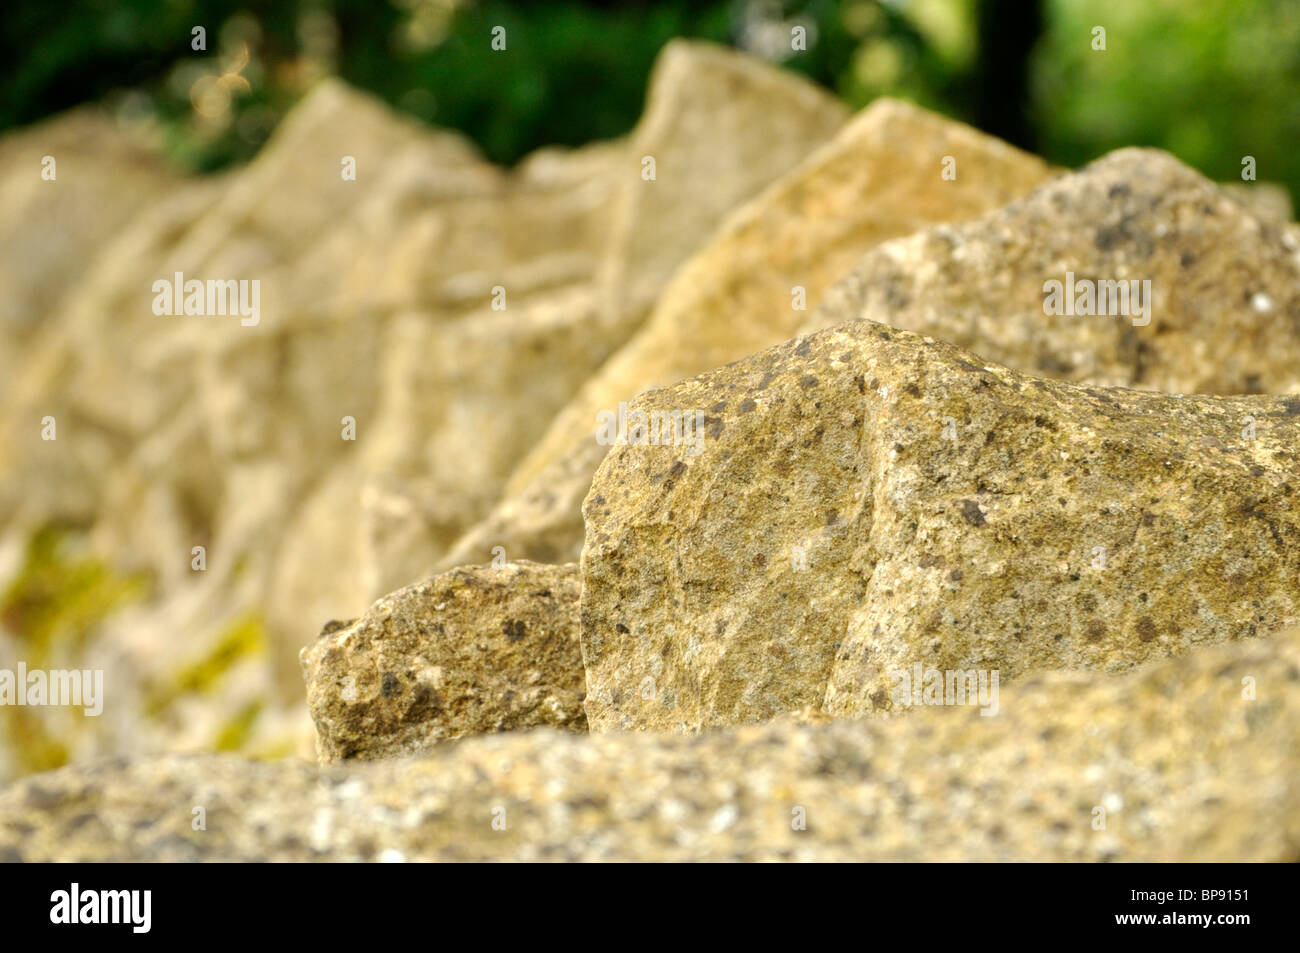 Cotswolds stone wall at Bibury, UK. Stock Photo